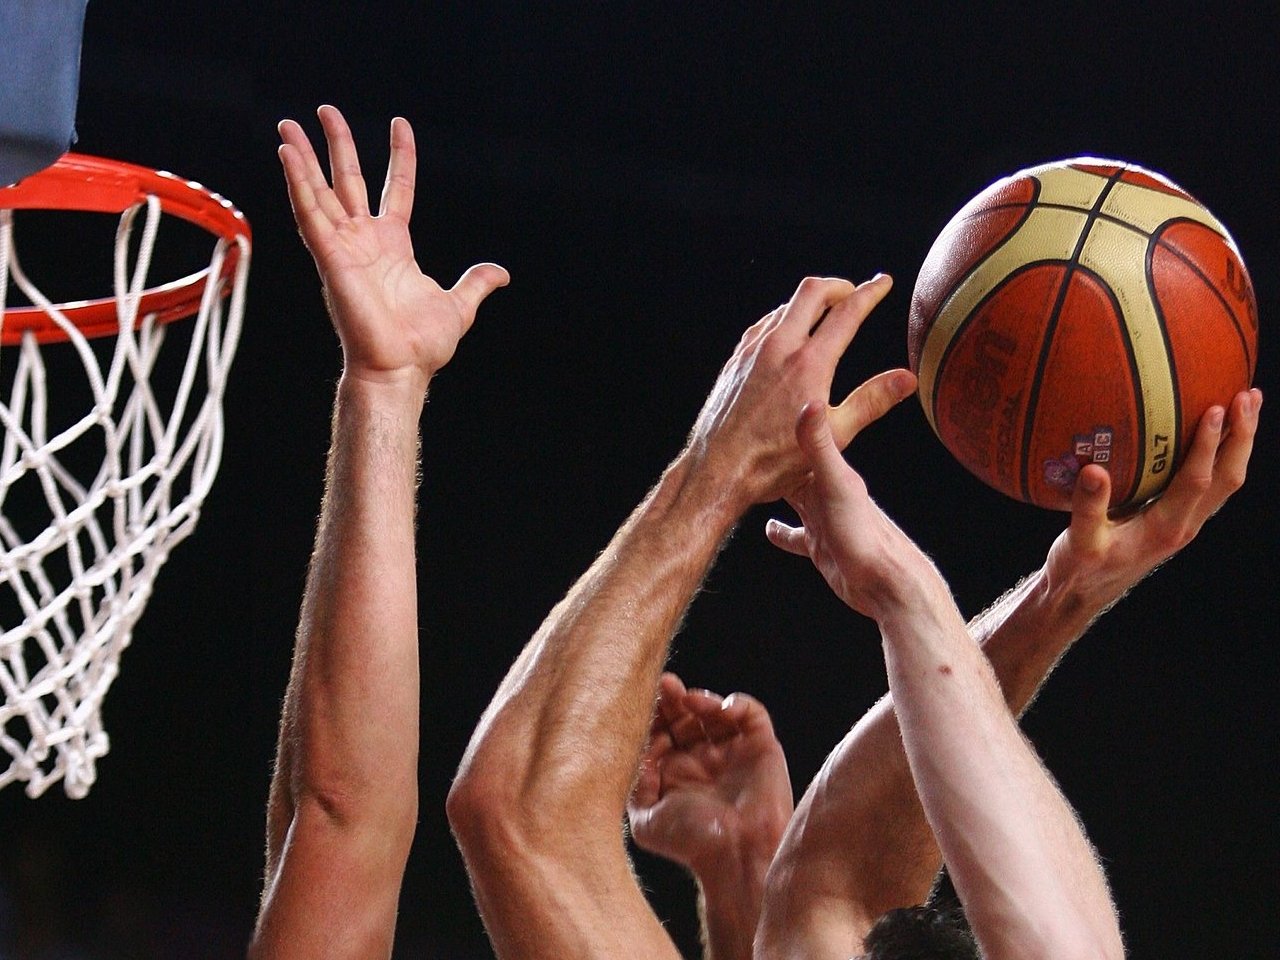 اتحاد السلة يقر انطلاق الموسم الجديد في 28 ديسمبر